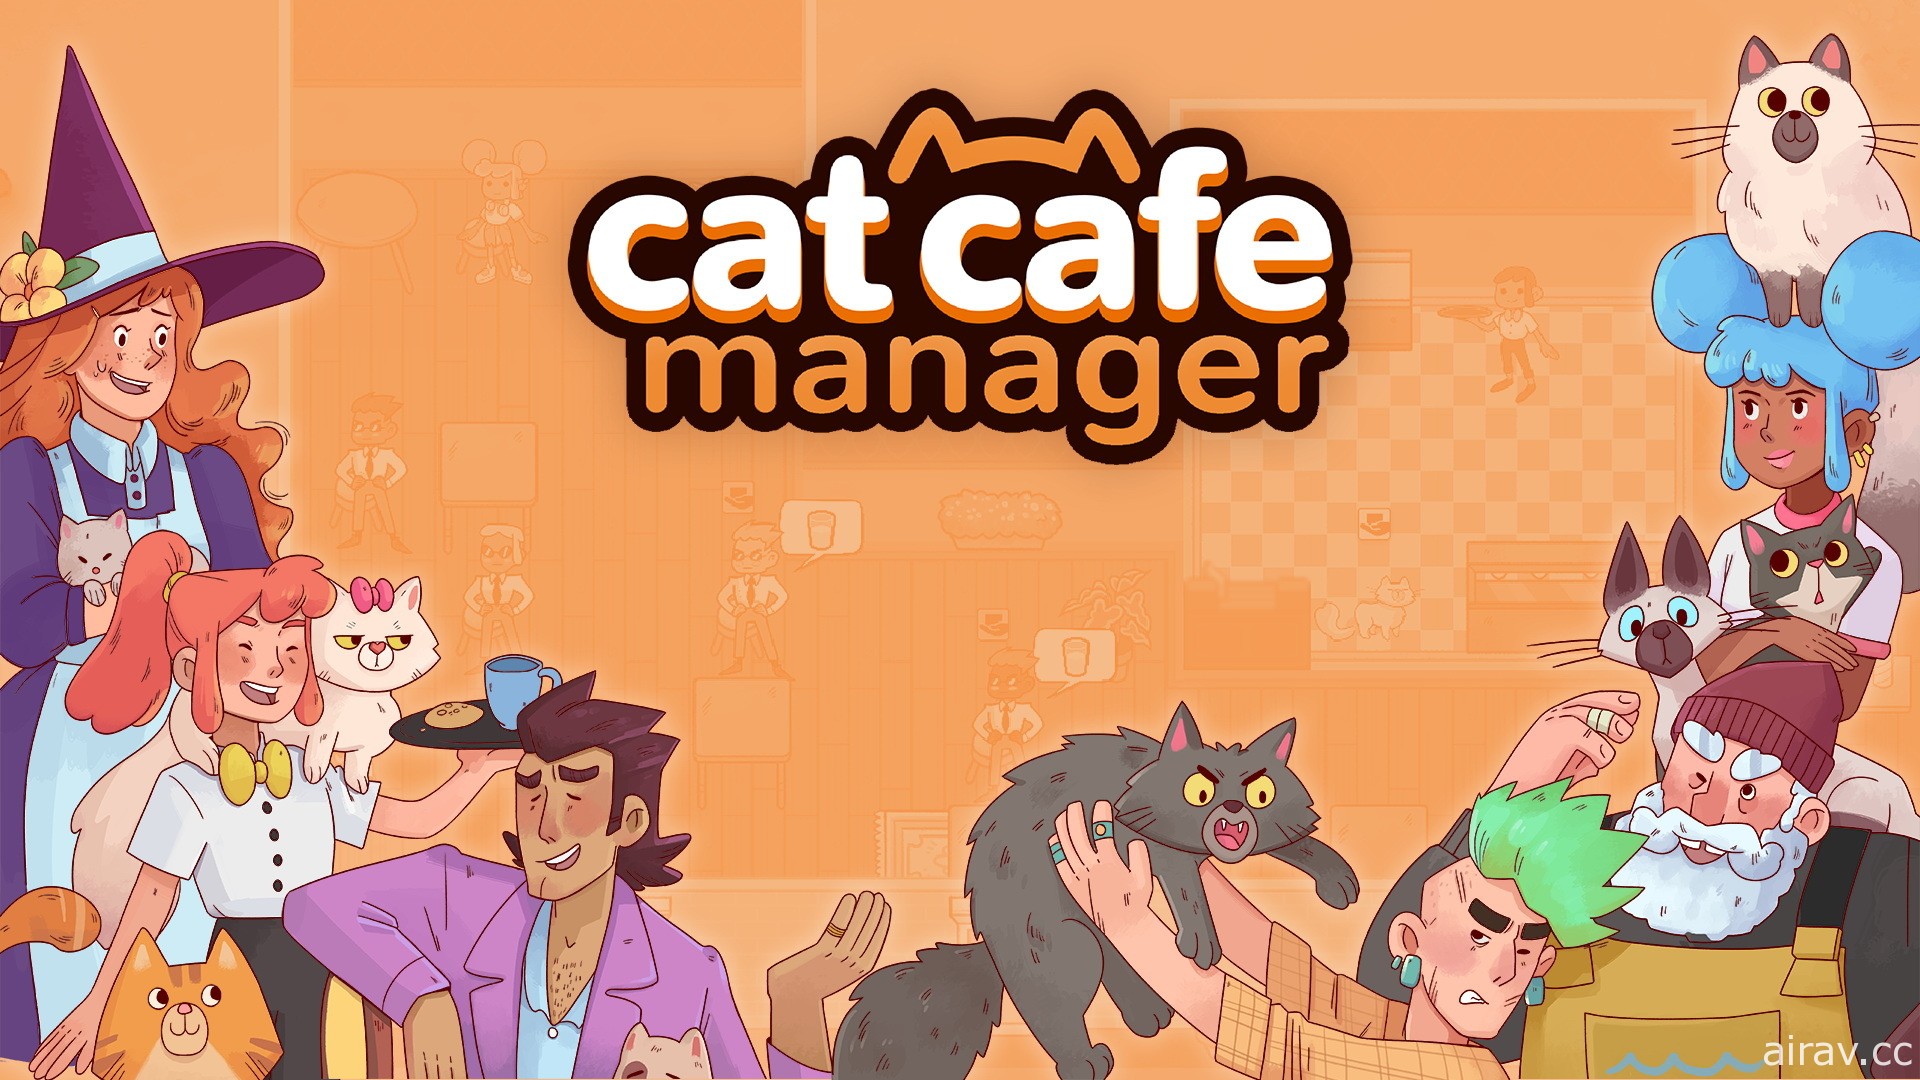 荷蘭團隊新作《貓咪咖啡館經理》今秋問世 經營咖啡館並照顧可愛流浪貓